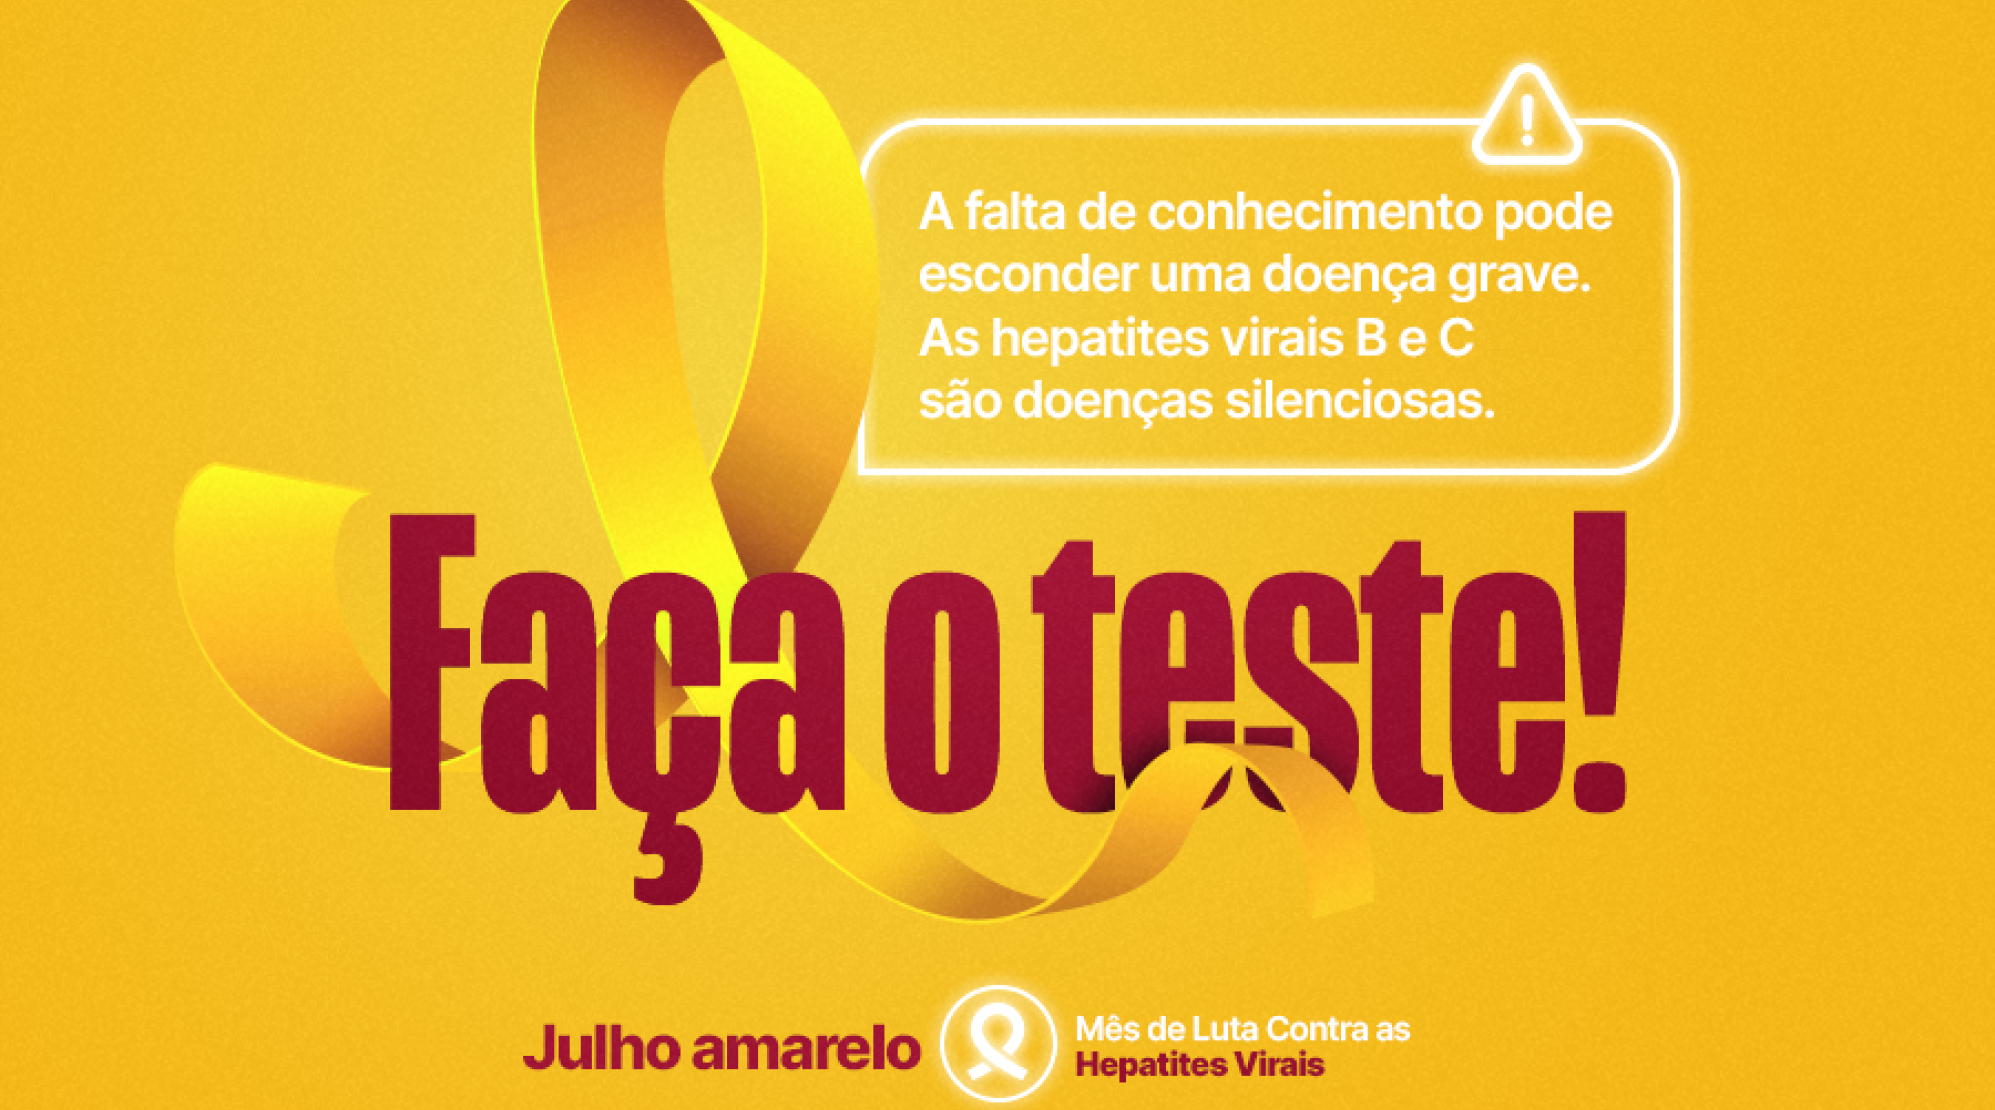 Julho Amarelo alerta para importância da testagem para diagnóstico precoce e tratamento adequado das hepatites virais